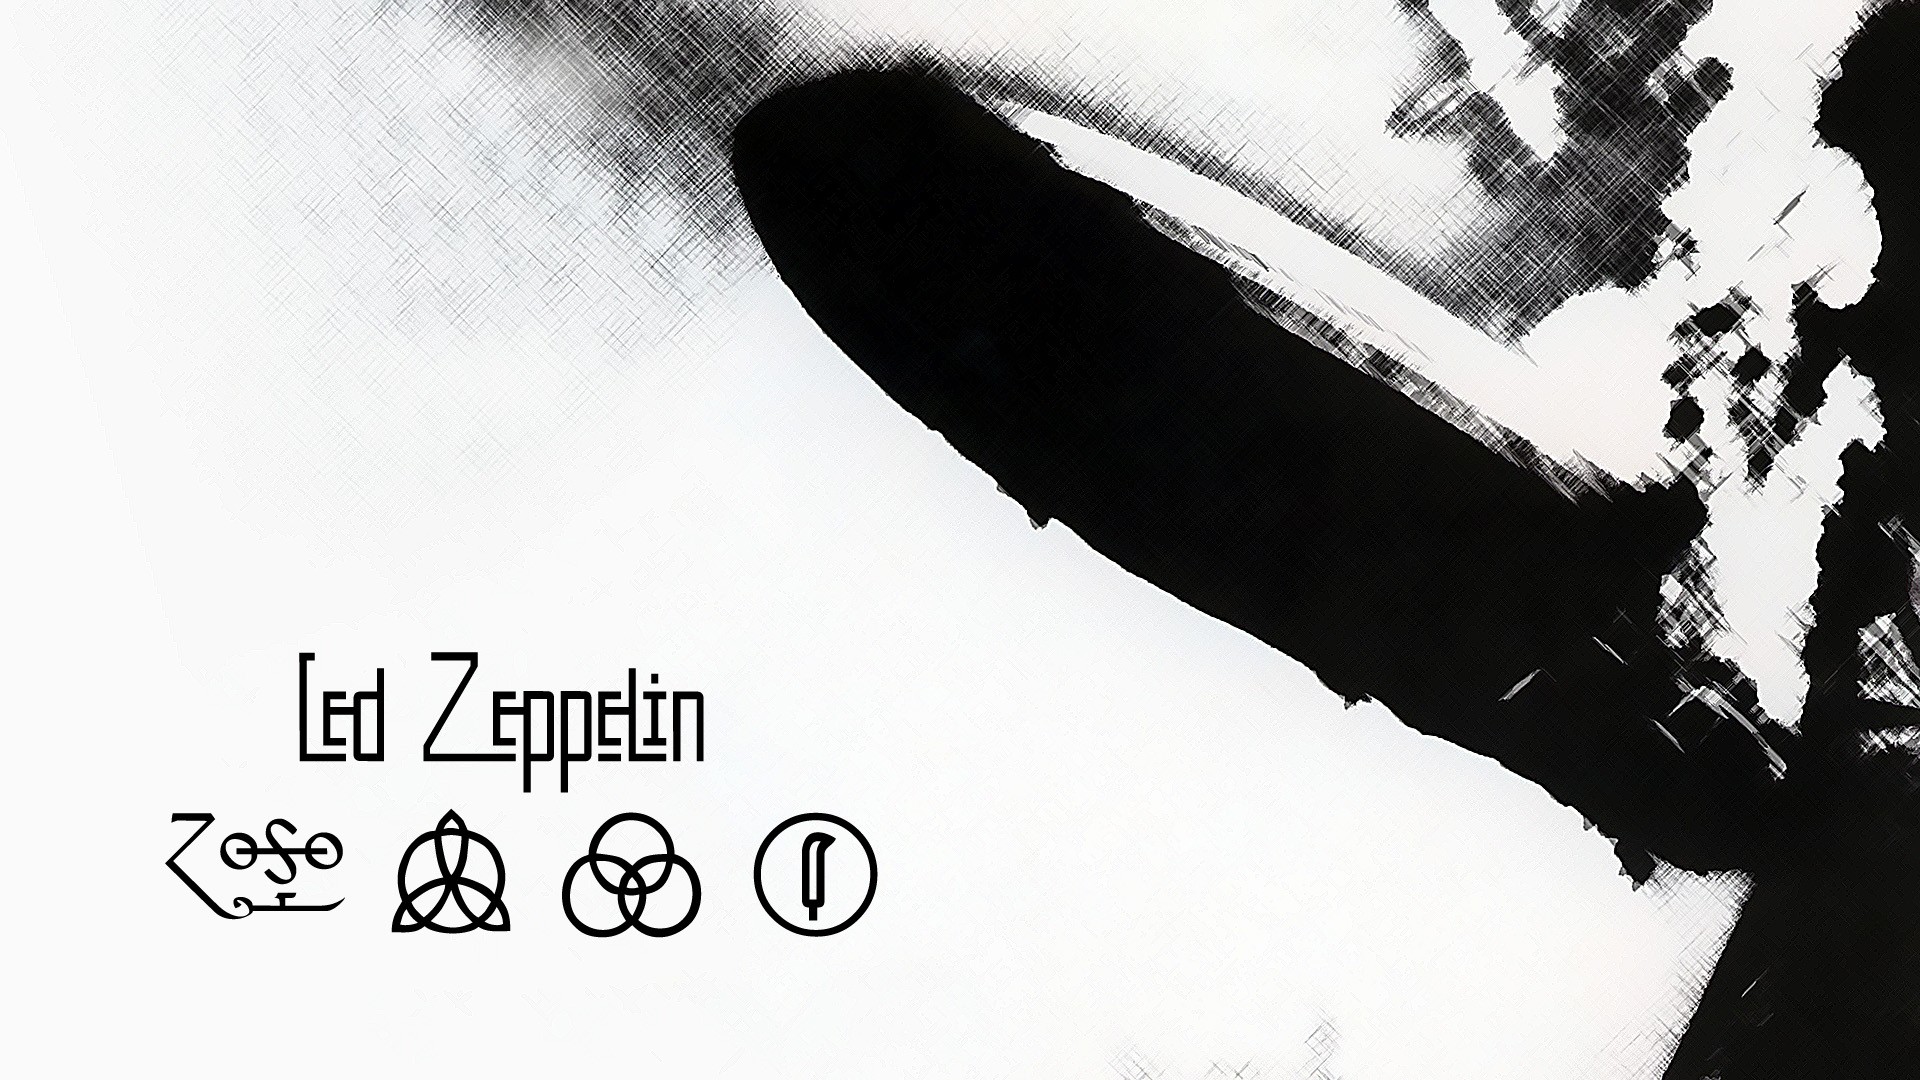 Album Covers Music Led Zeppelin 1920x1080